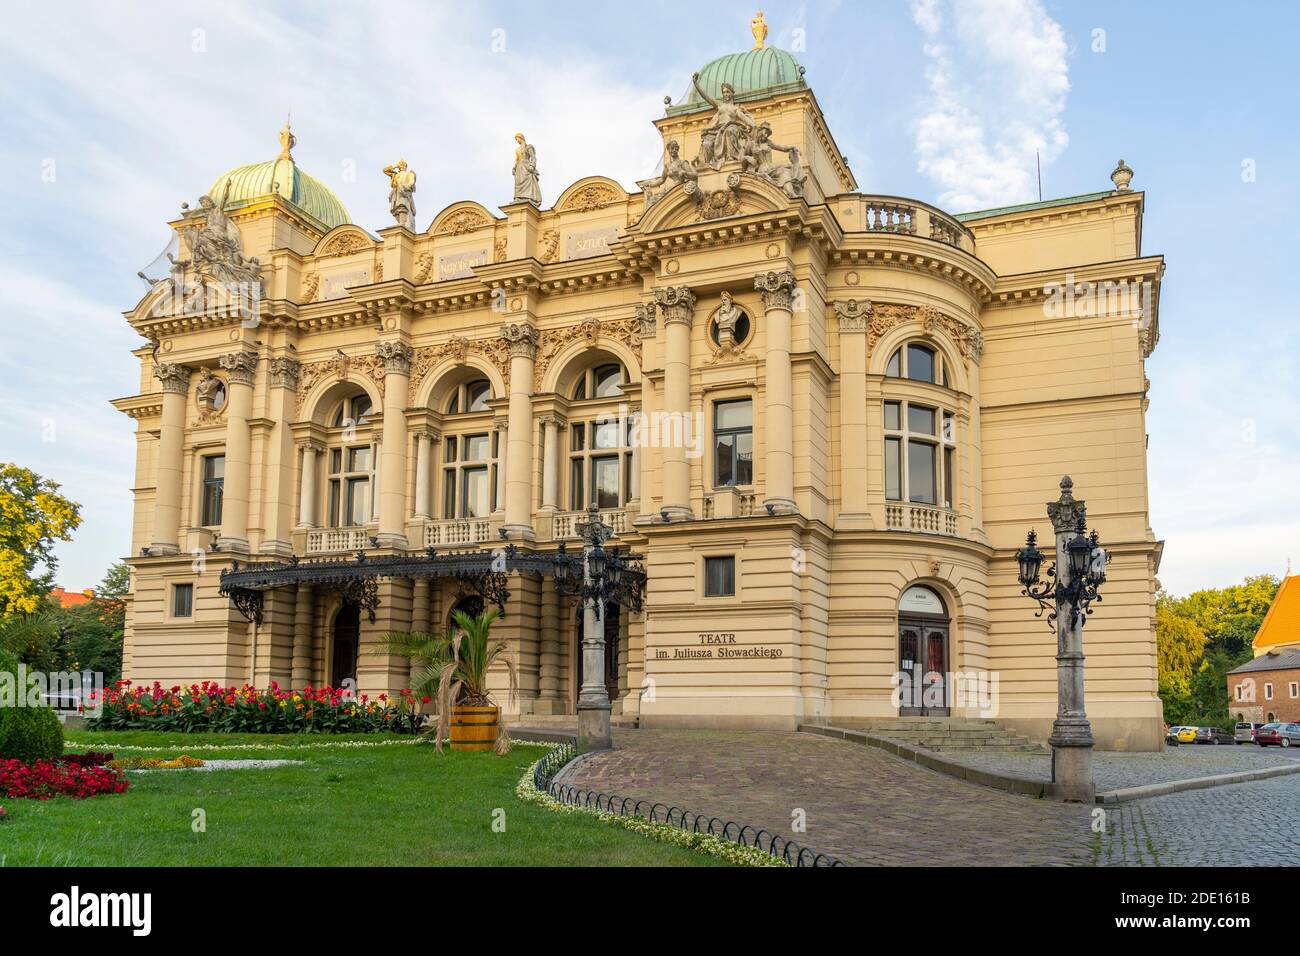 Juliusz Slowacki Theatre, Old Town, UNESCO World Heritage Site, Krakow, Poland, Europe Stock Photo